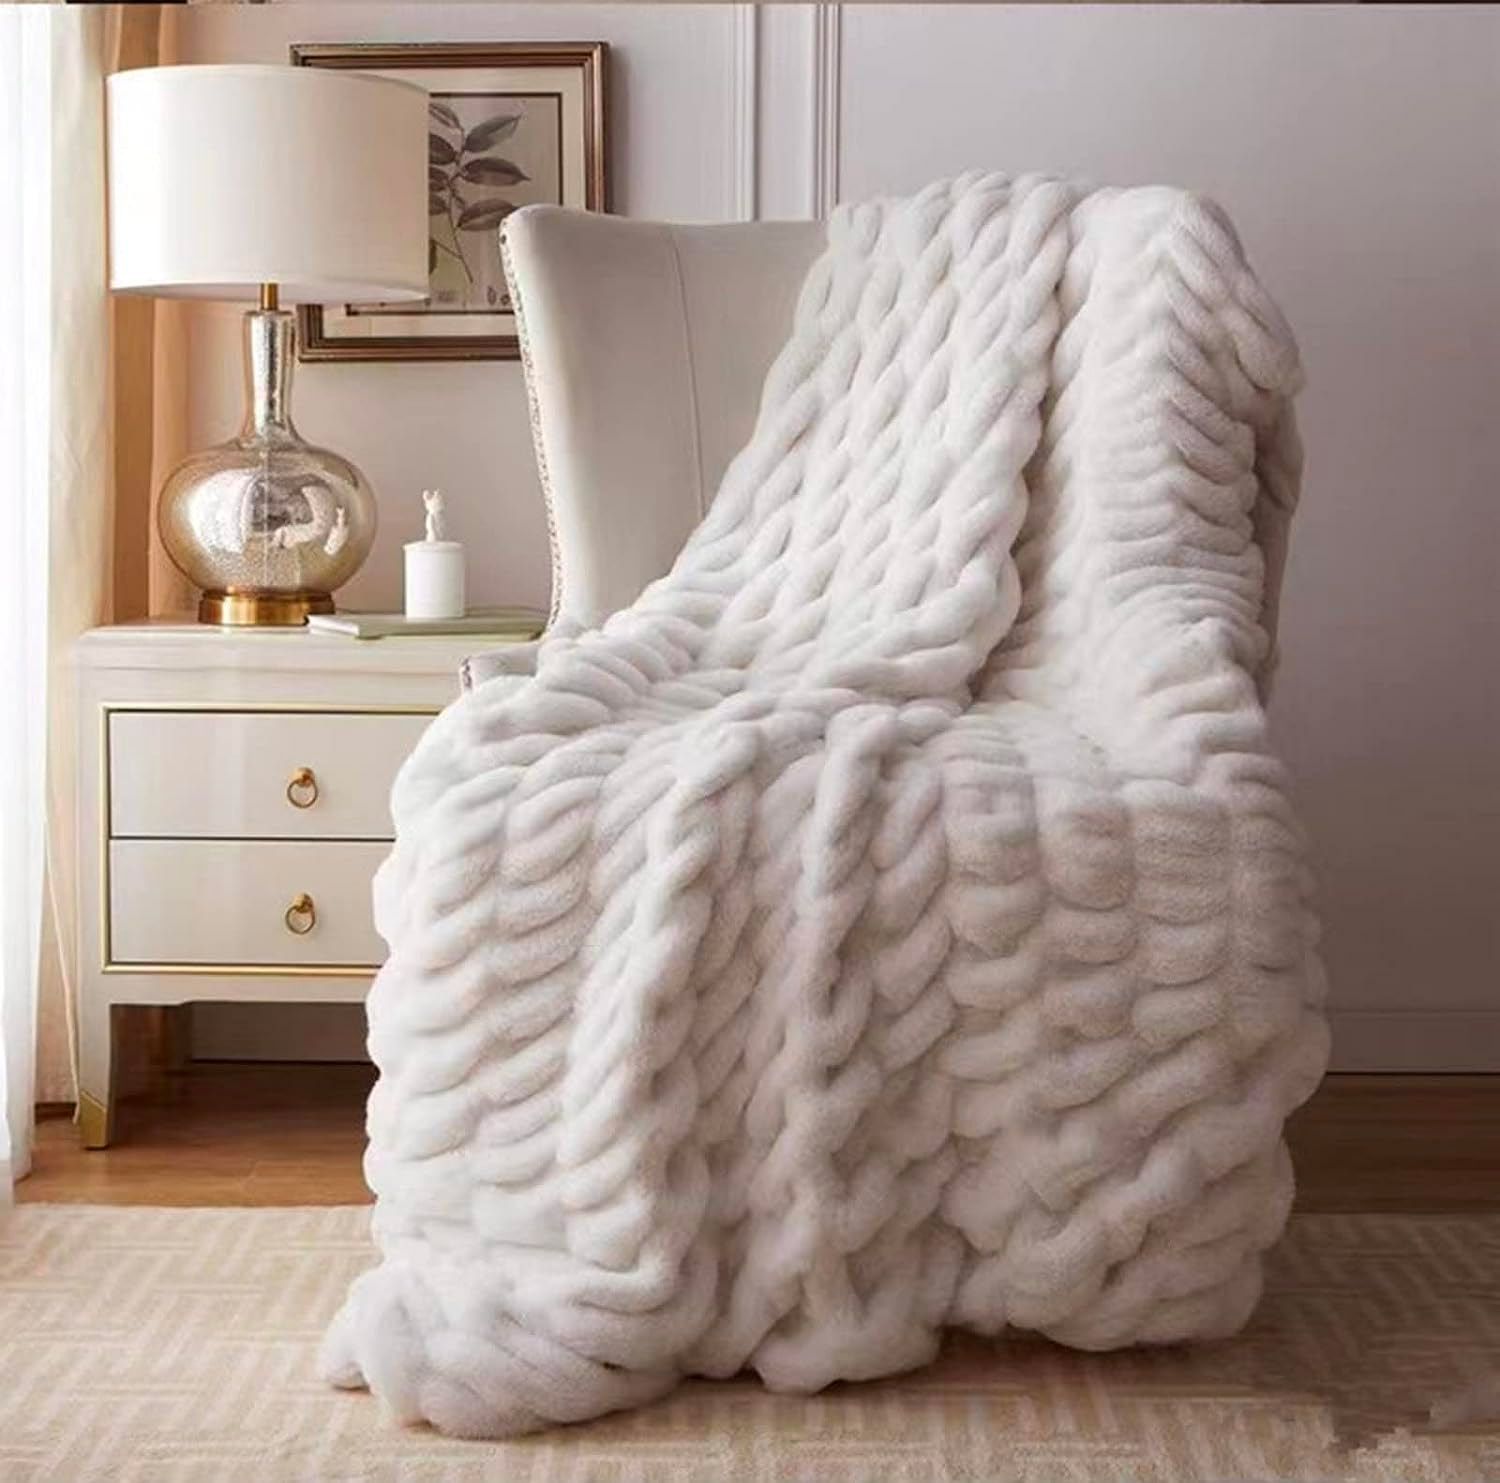 Las 10 mantas más bonitas y elegantes para el sofá